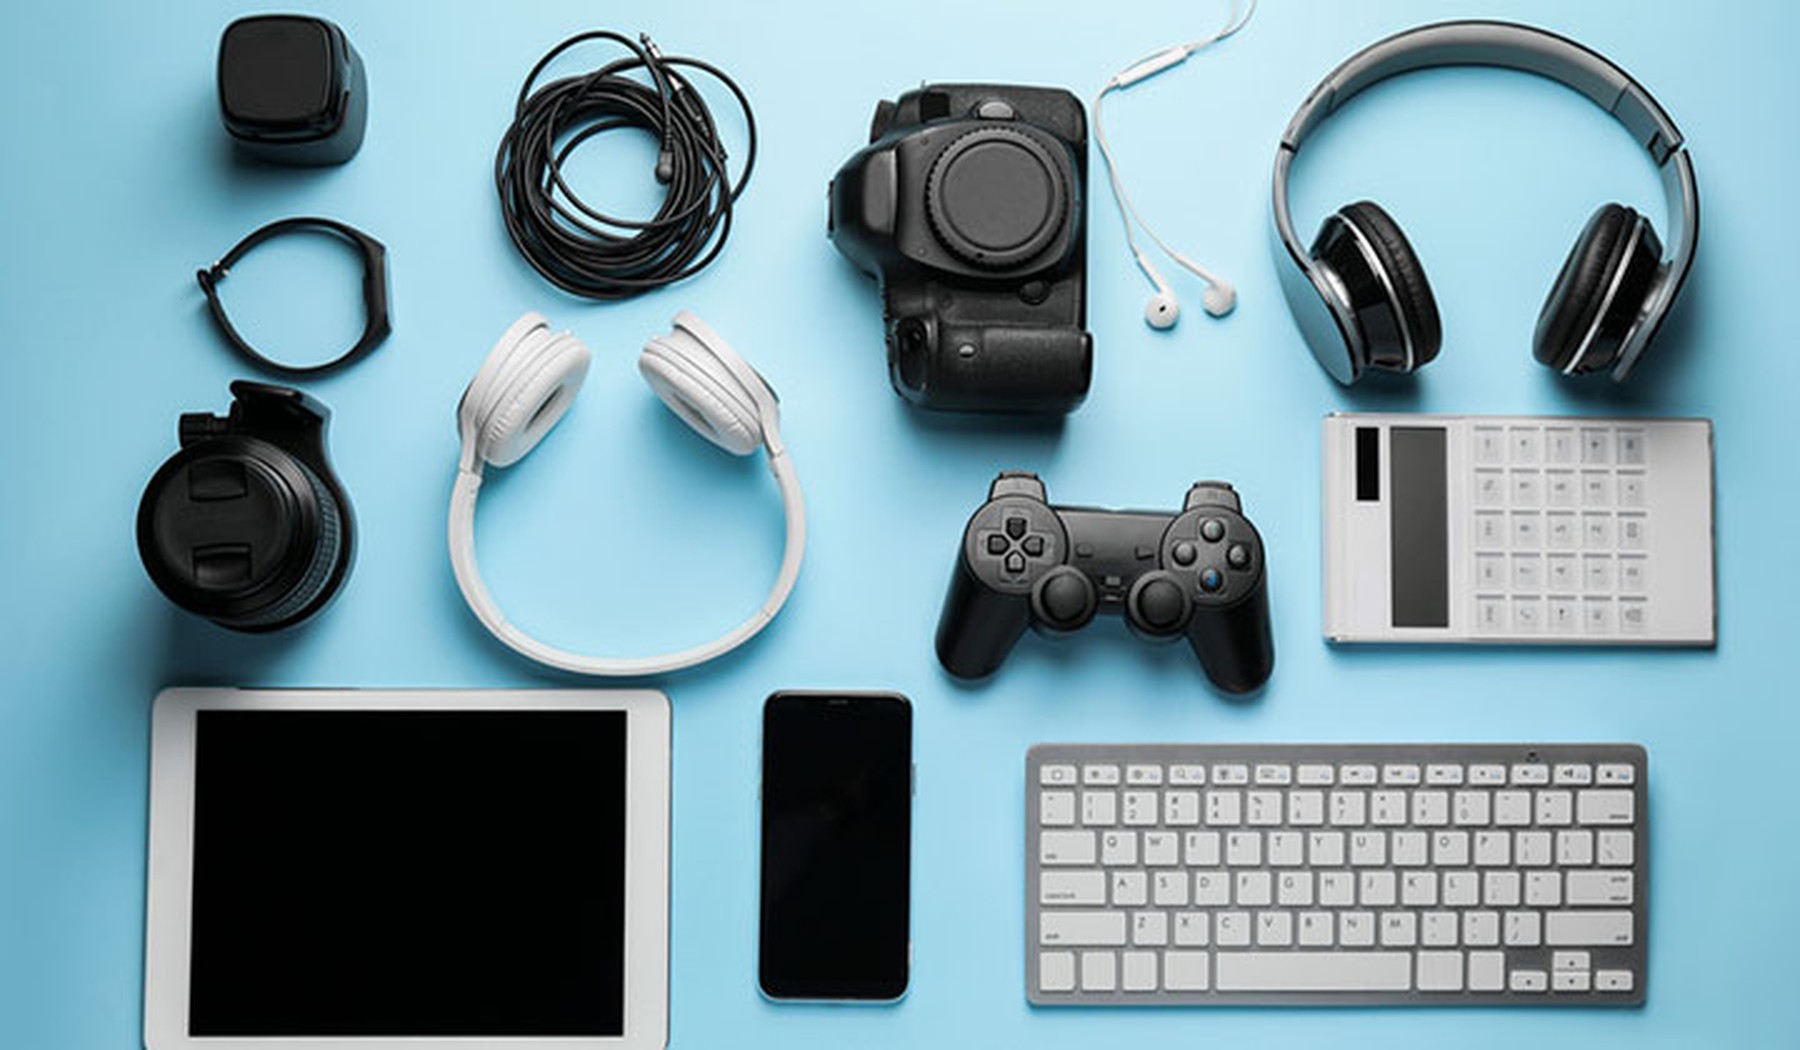 auriculares, teclados, tablets, smartphones y accesorios de tecnología